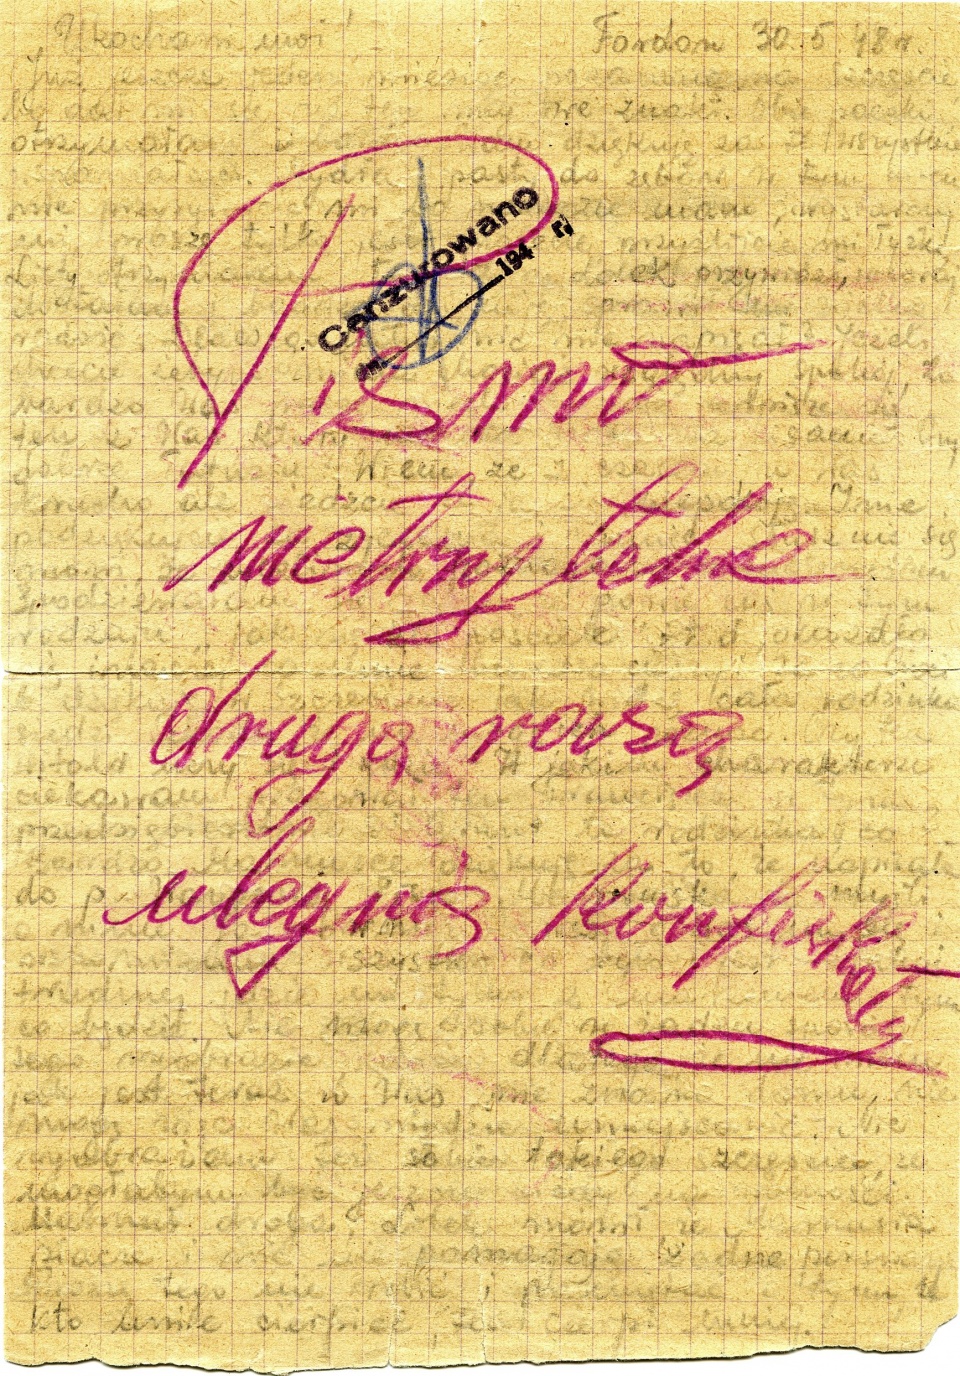 List z więzeinia w Fordonie z 30 maja 1948 roku z notatką cenzora. Fot. z książki "Nie było czasu na strach…", wydanej przez szczeciński oddział IPN.